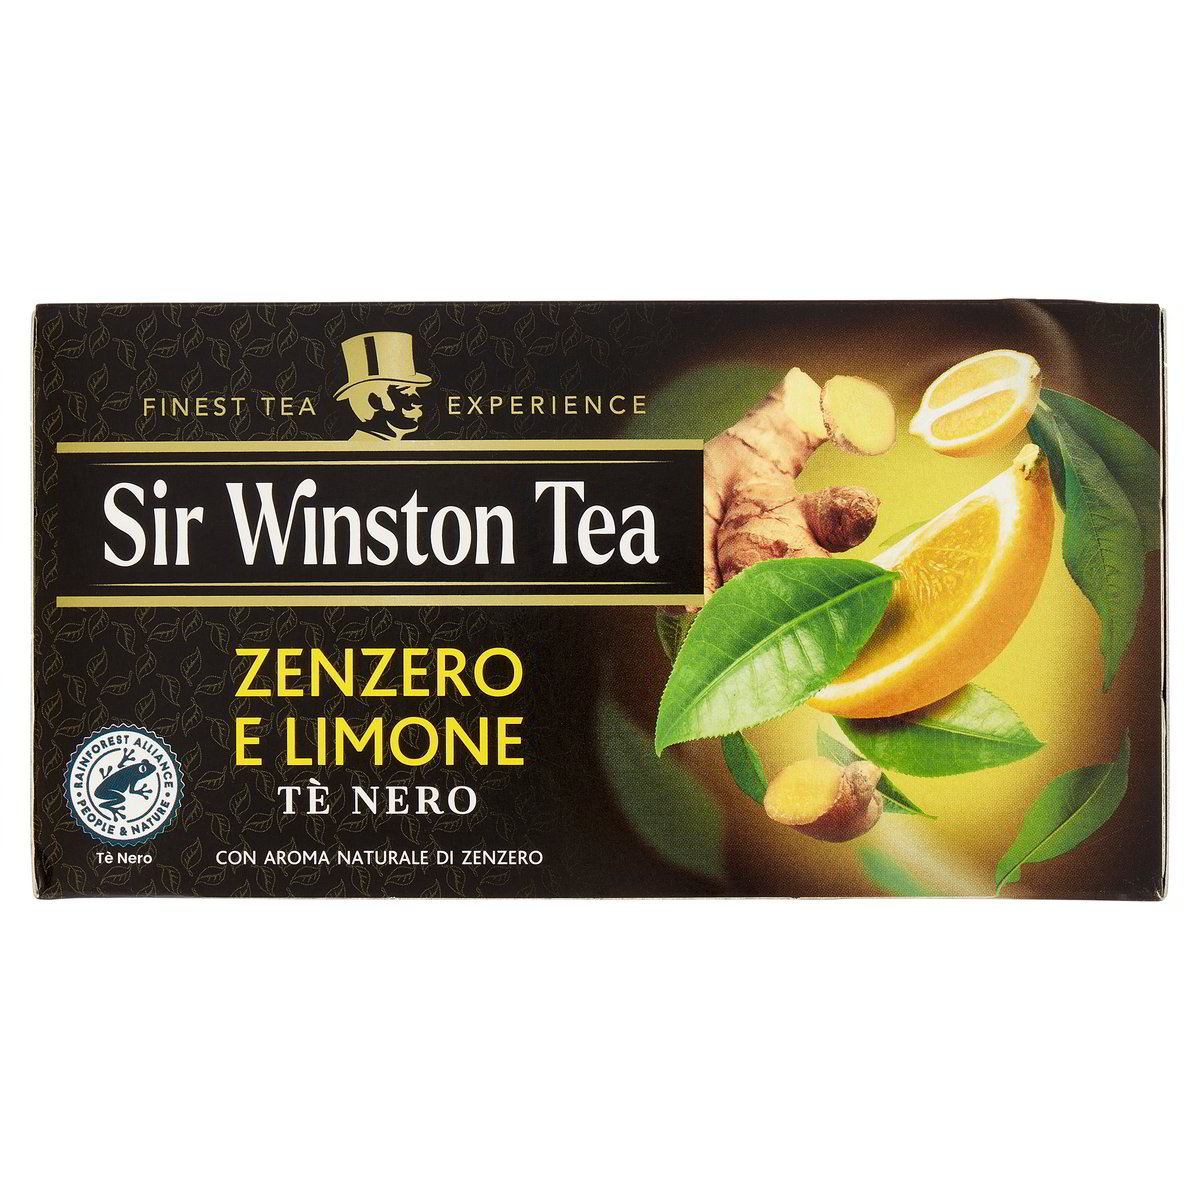 Sir Winston Tea Tè Nero allo zenzero e limone